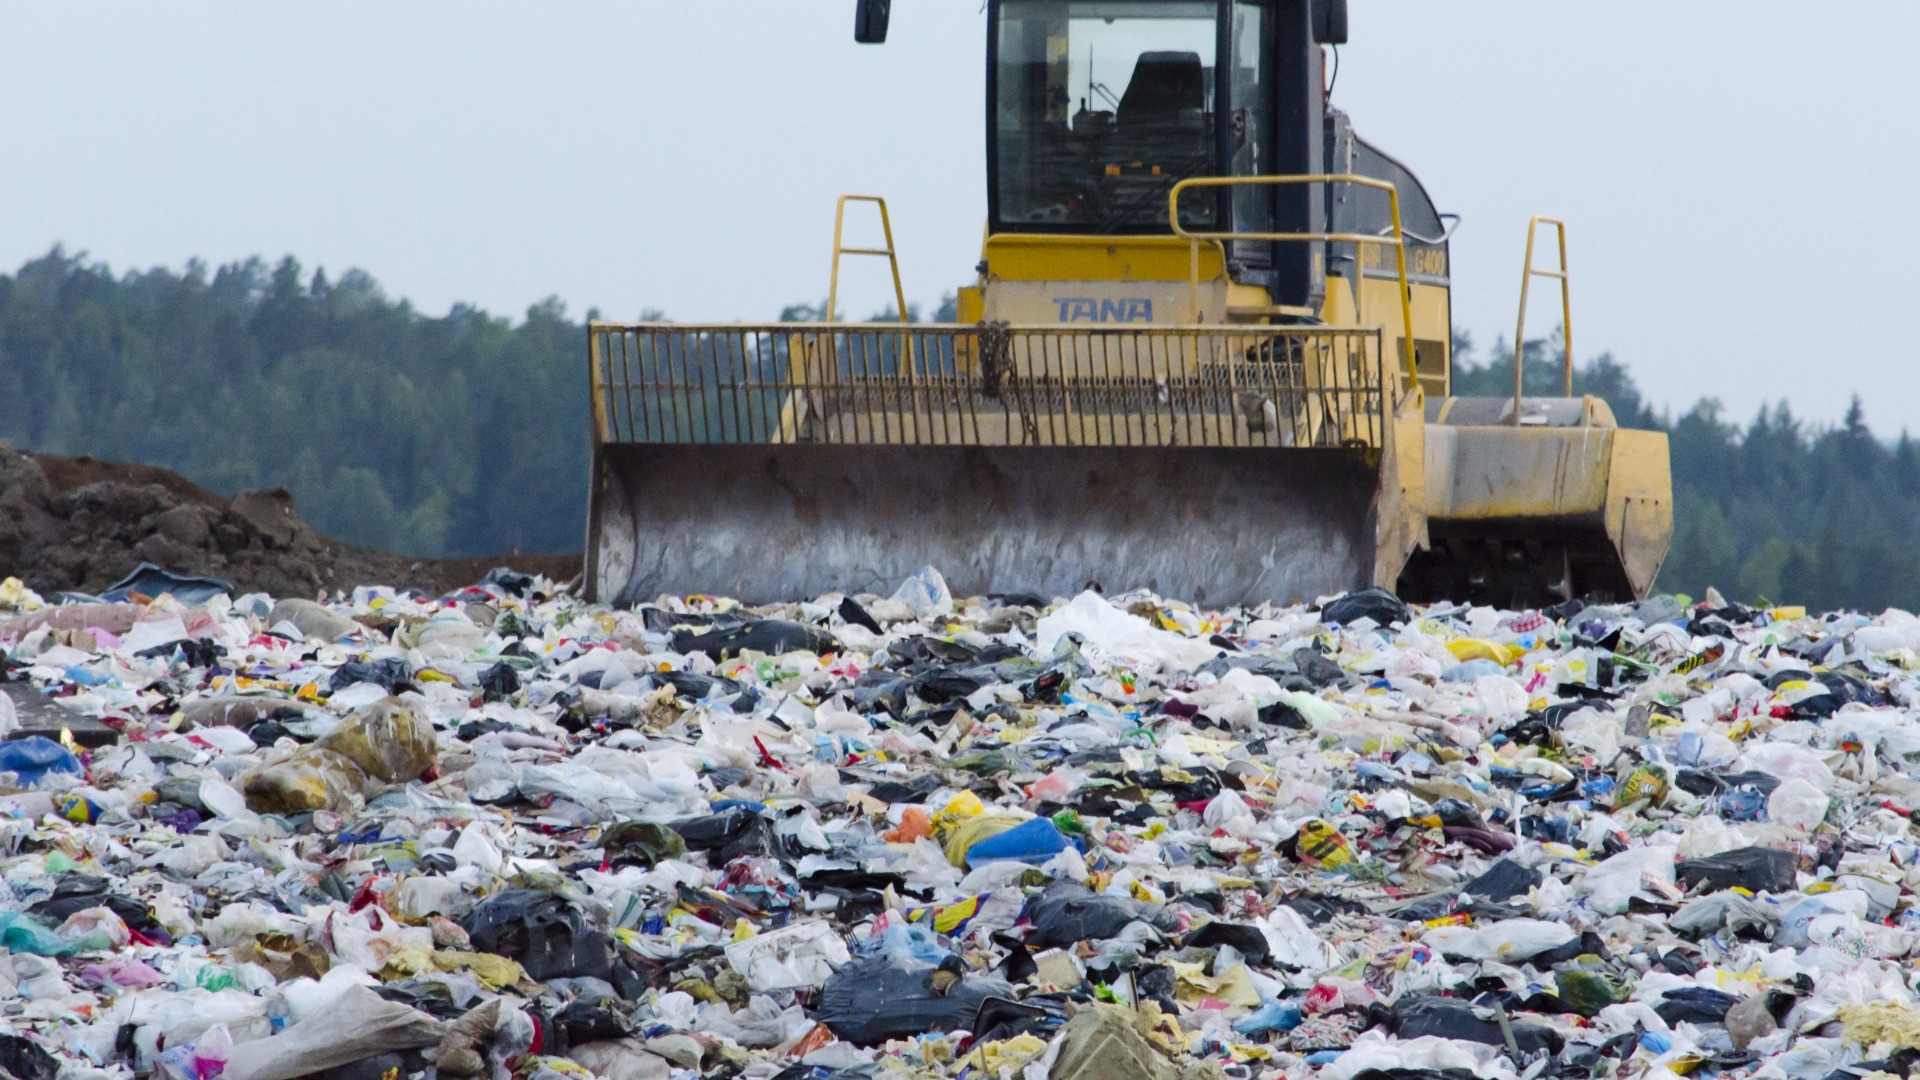 РЭО и Липецкая область планируют избавиться от переполненных мусорных полигонов